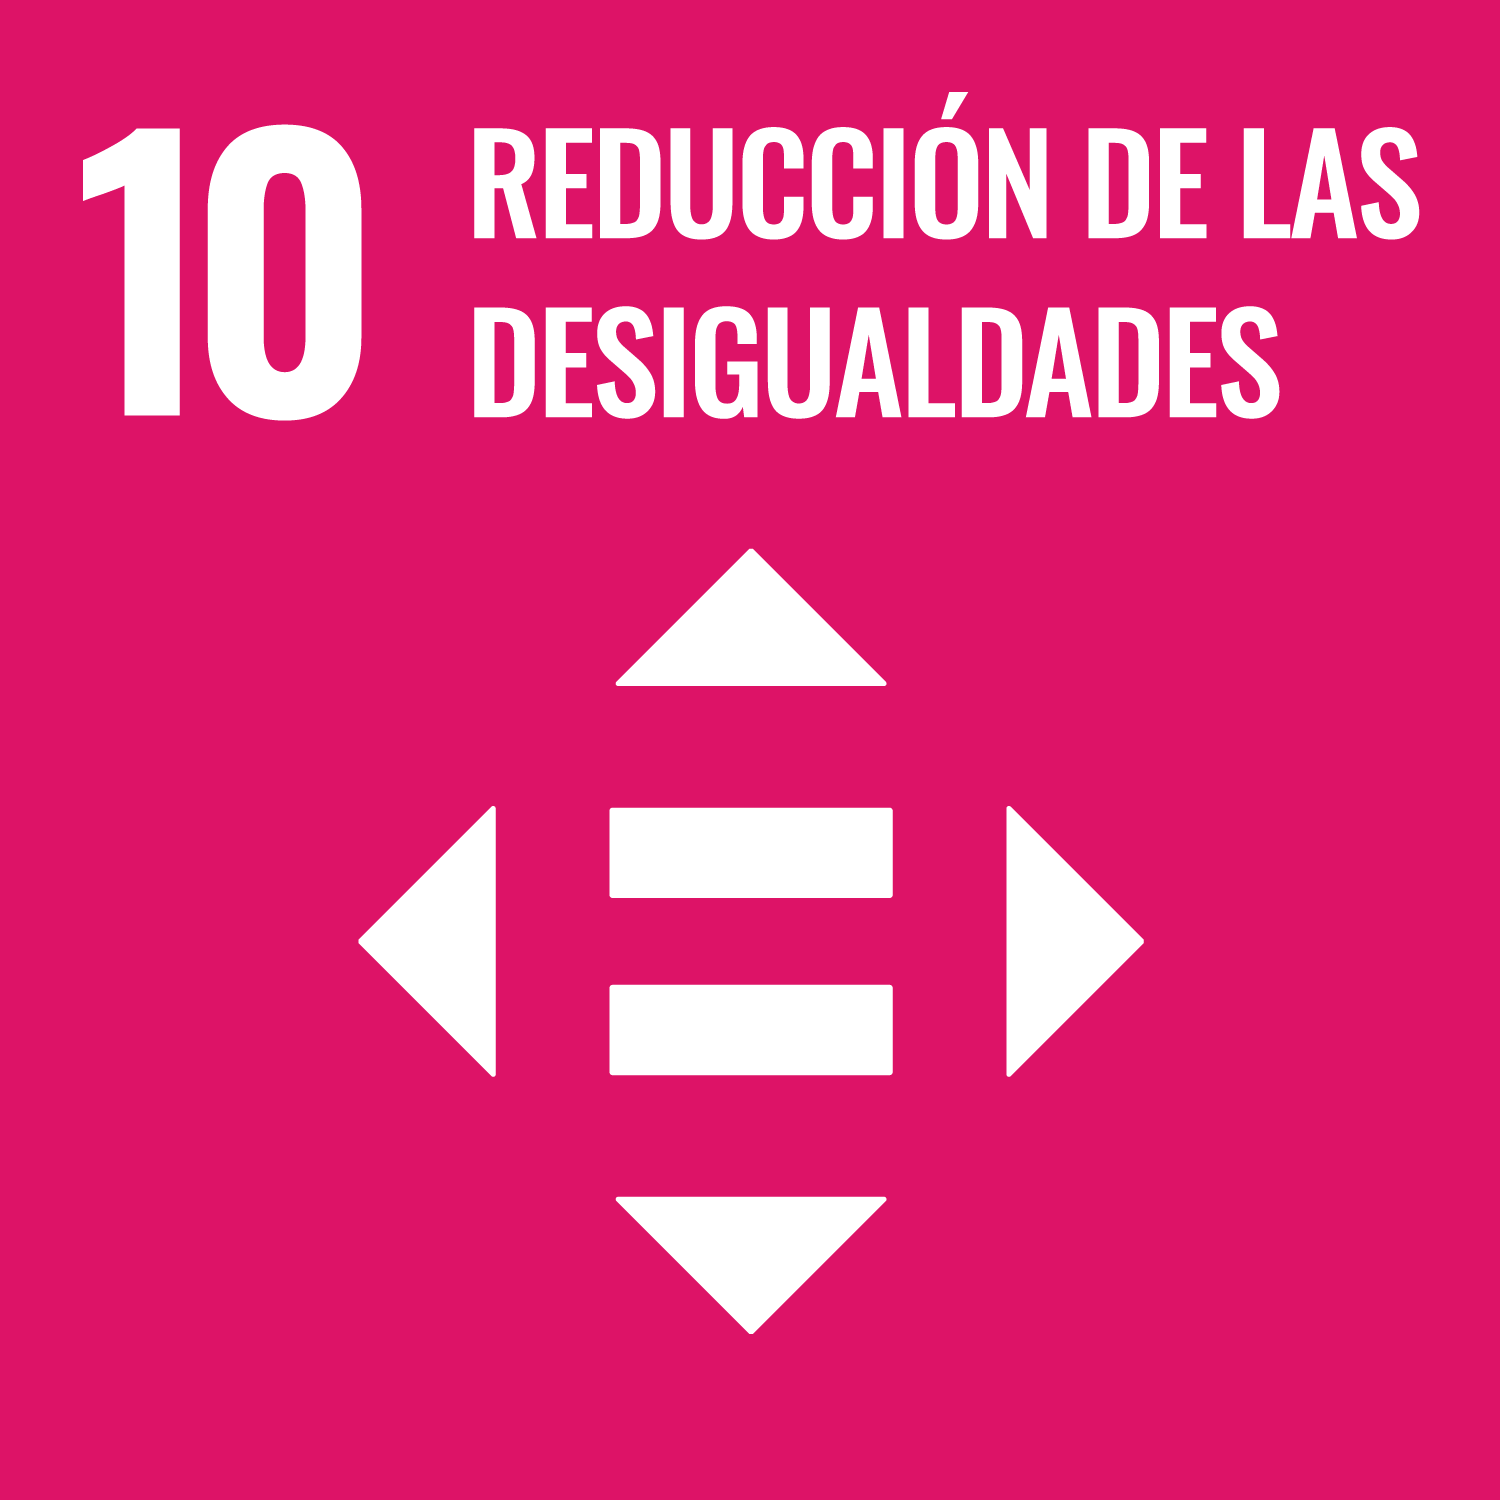 Compromiso de Visita Gijón/Xixón con el ODS 10 reducción de las desigualdades